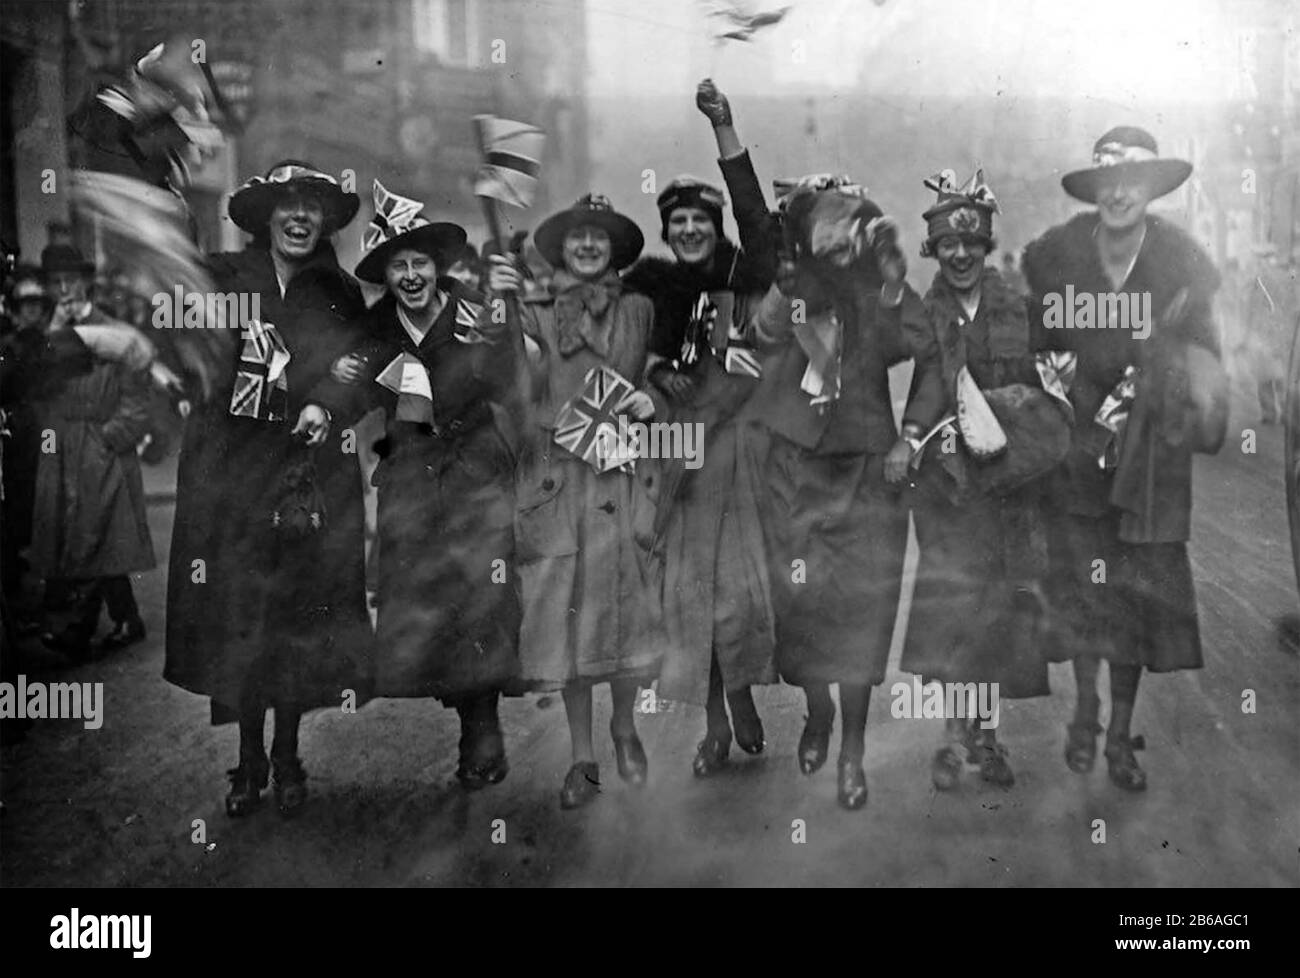 ARMISTICE DAY 11 November 1918. Celebrations in London. Stock Photo